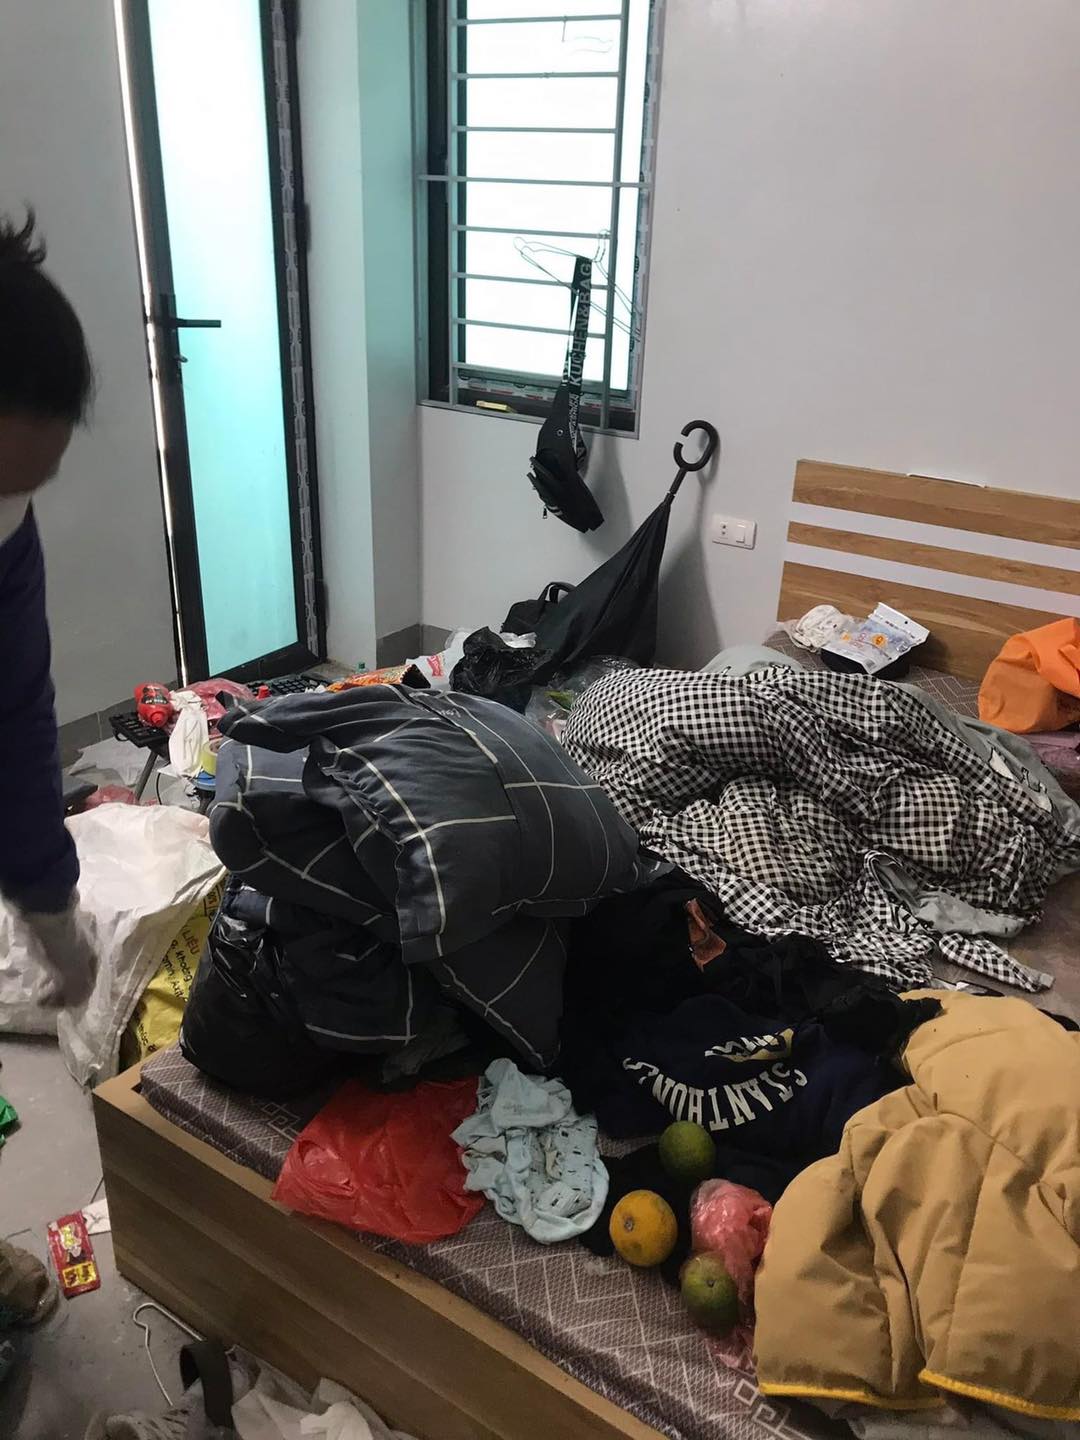 Kinh hoàng với căn phòng trọ của 2 nữ sinh Hà Nội: Rác thải chất ngập nhà, xem đến WC mà không chấp nhận được - Ảnh 3.